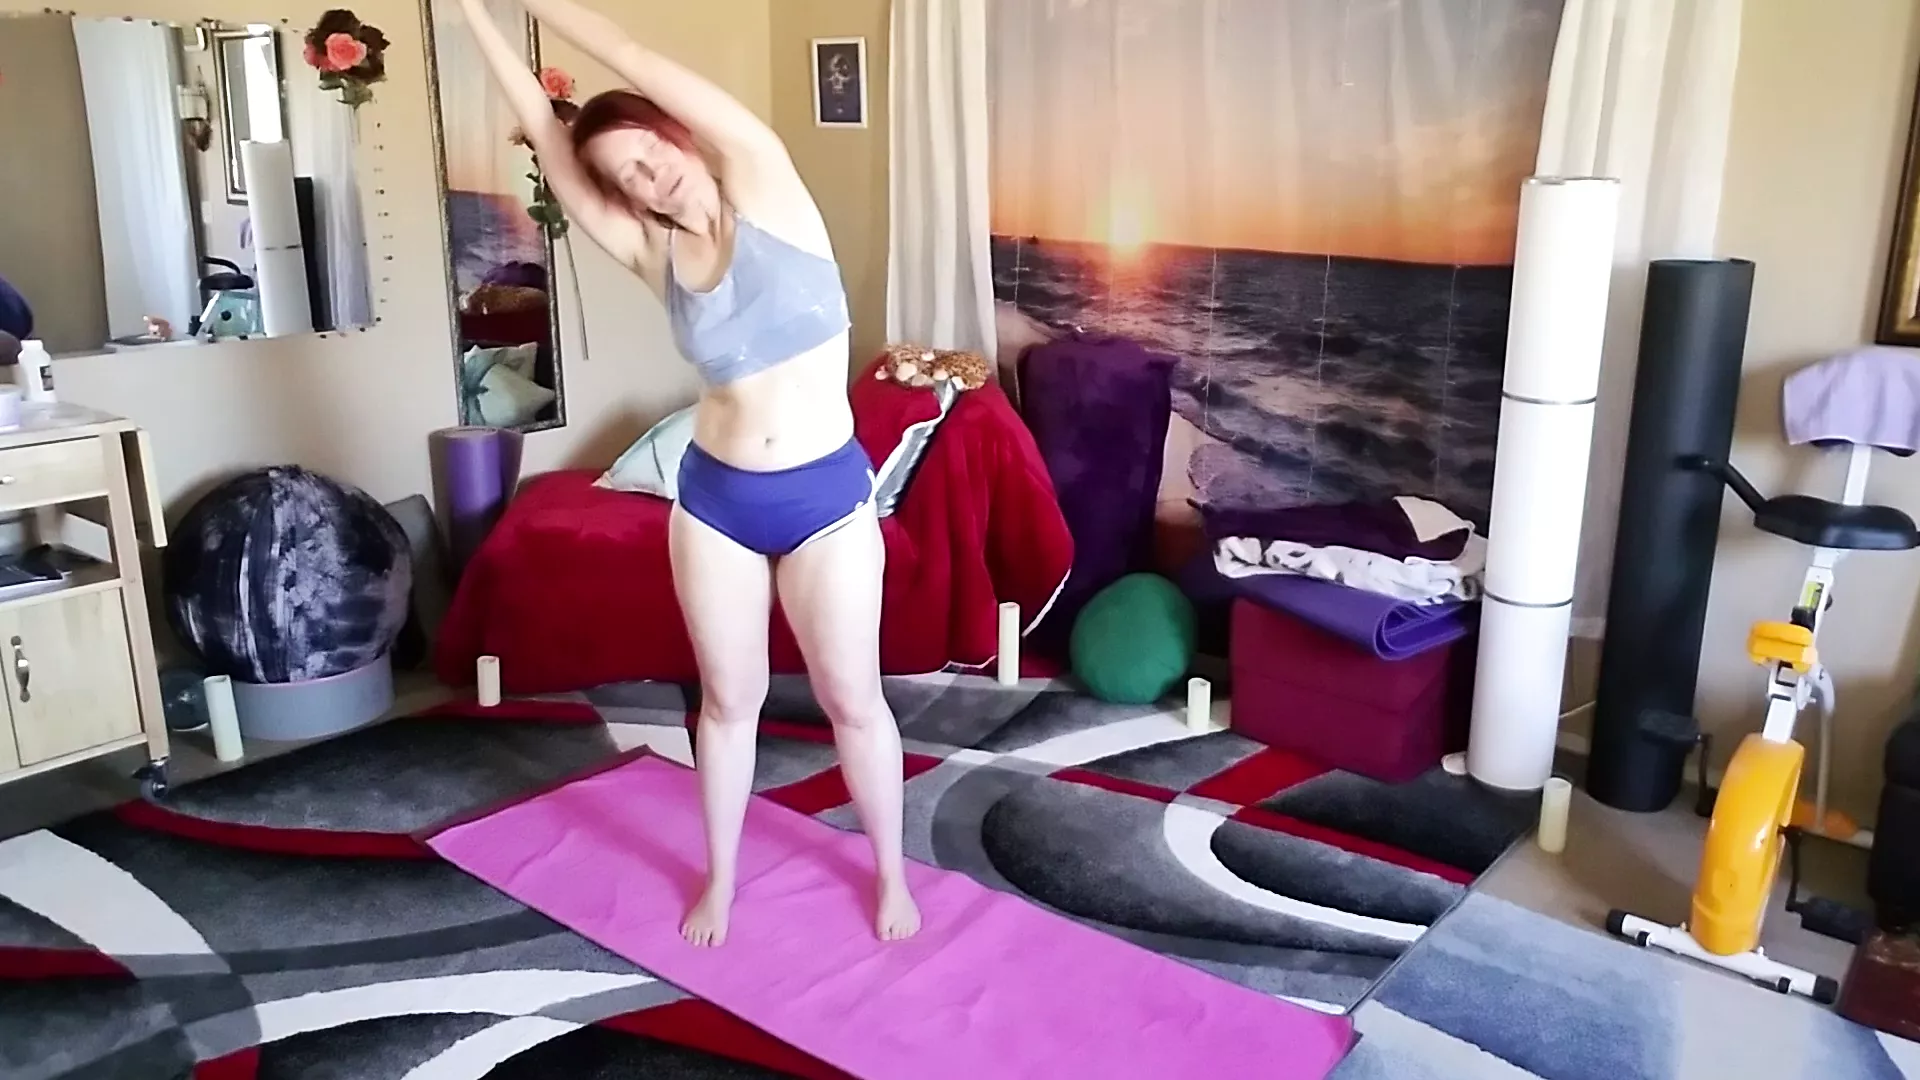 Aurora Willows fa yoga in pantaloncini sexy guarda online Immagine